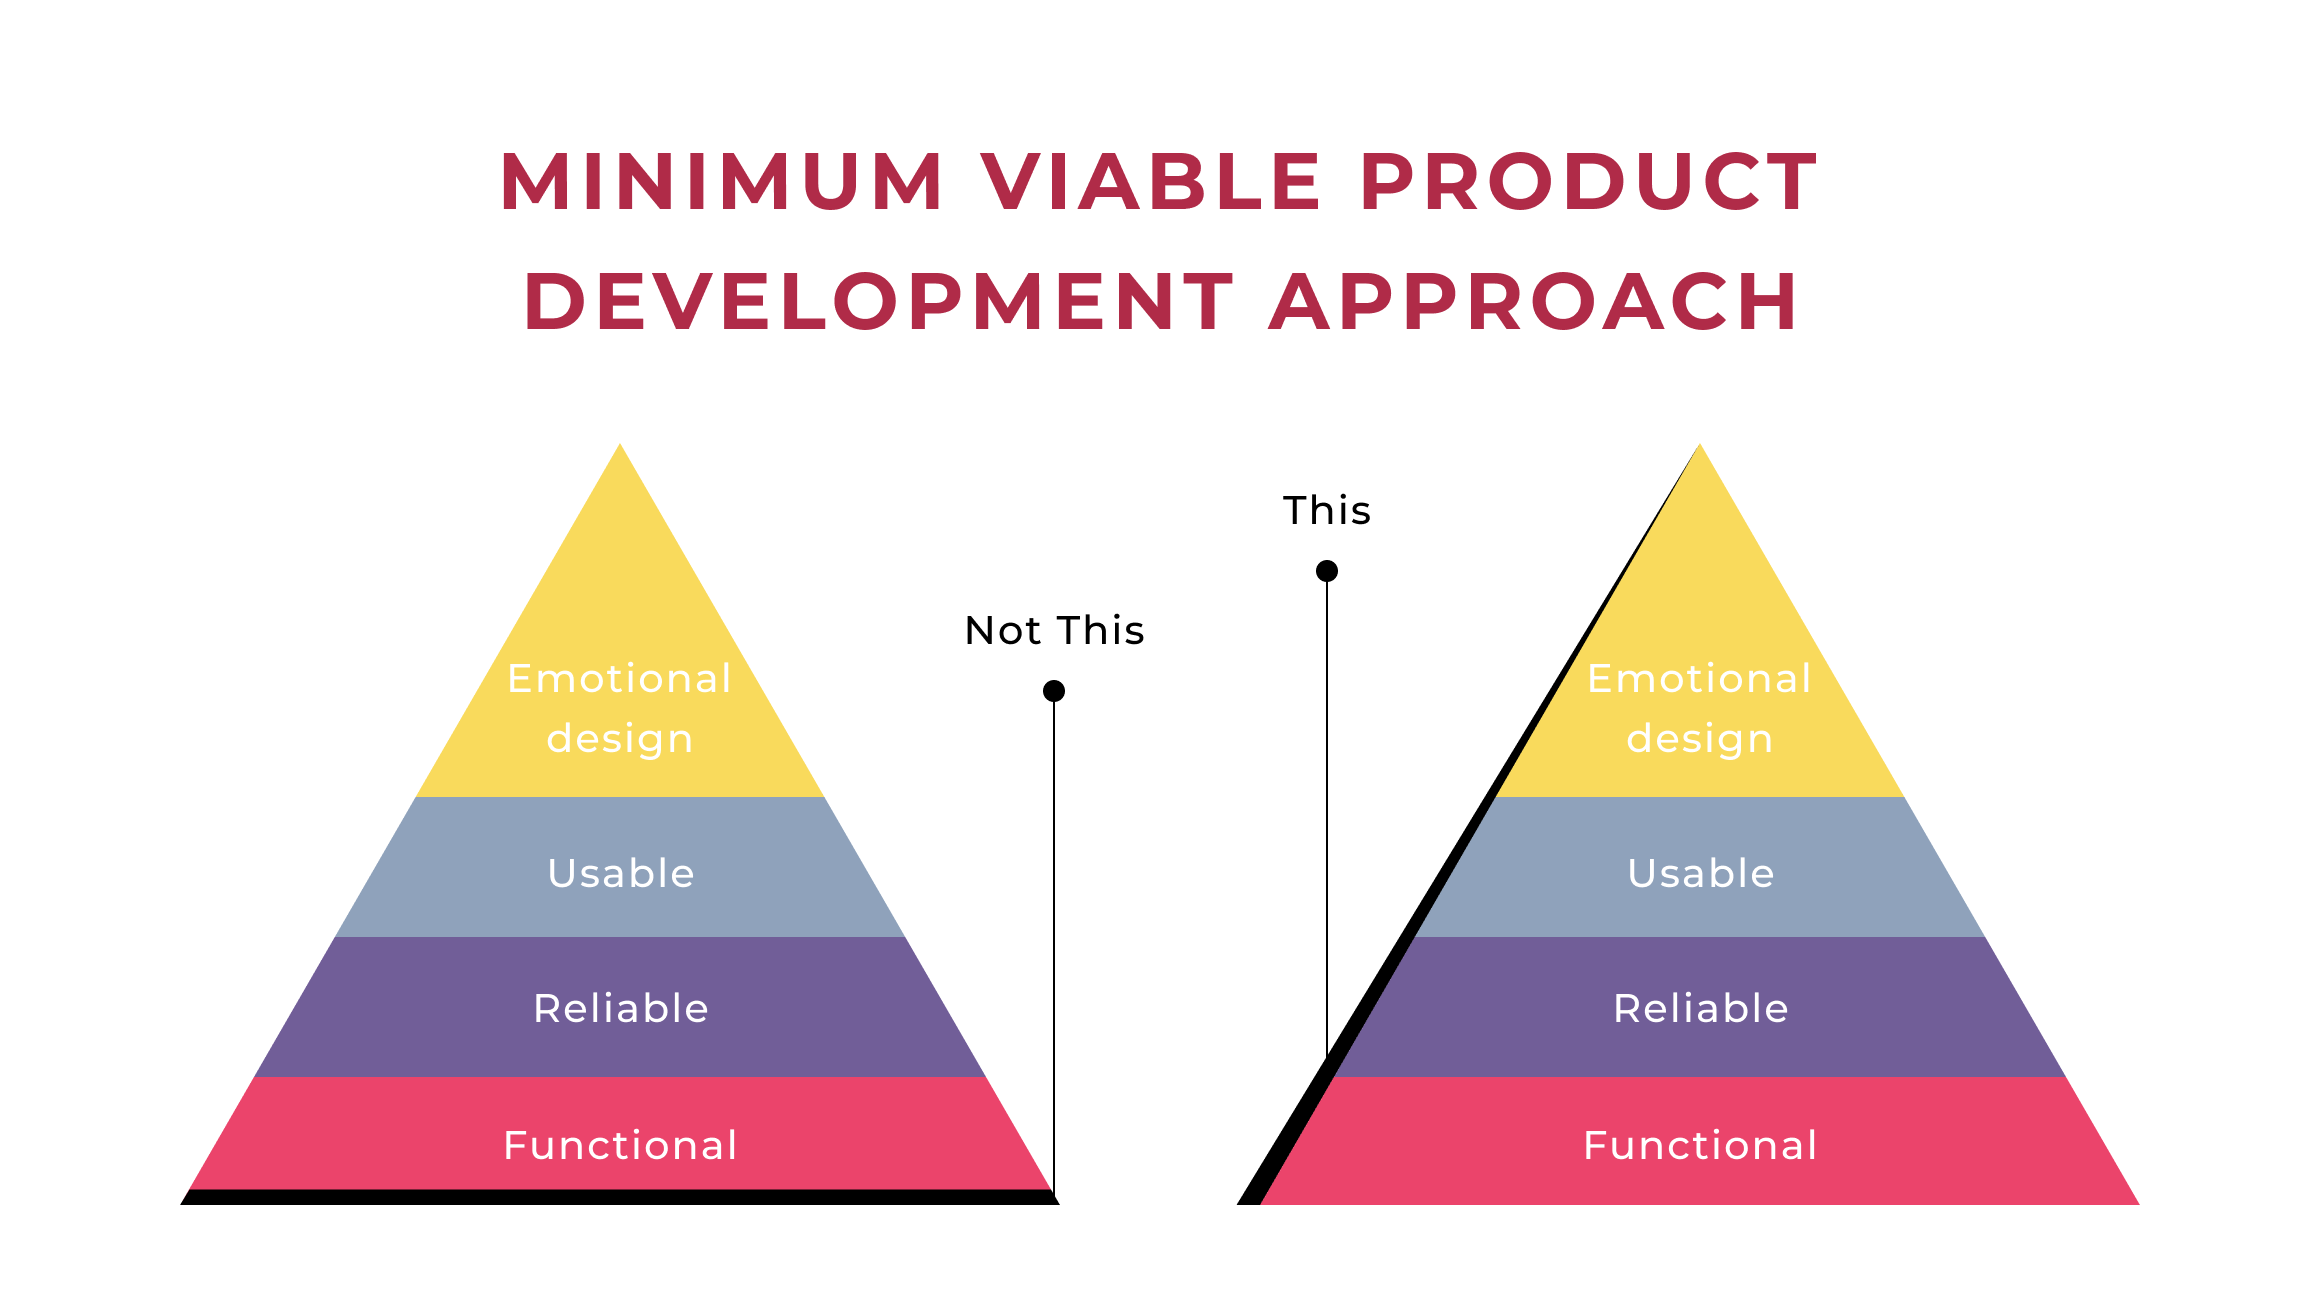 MVP development approach